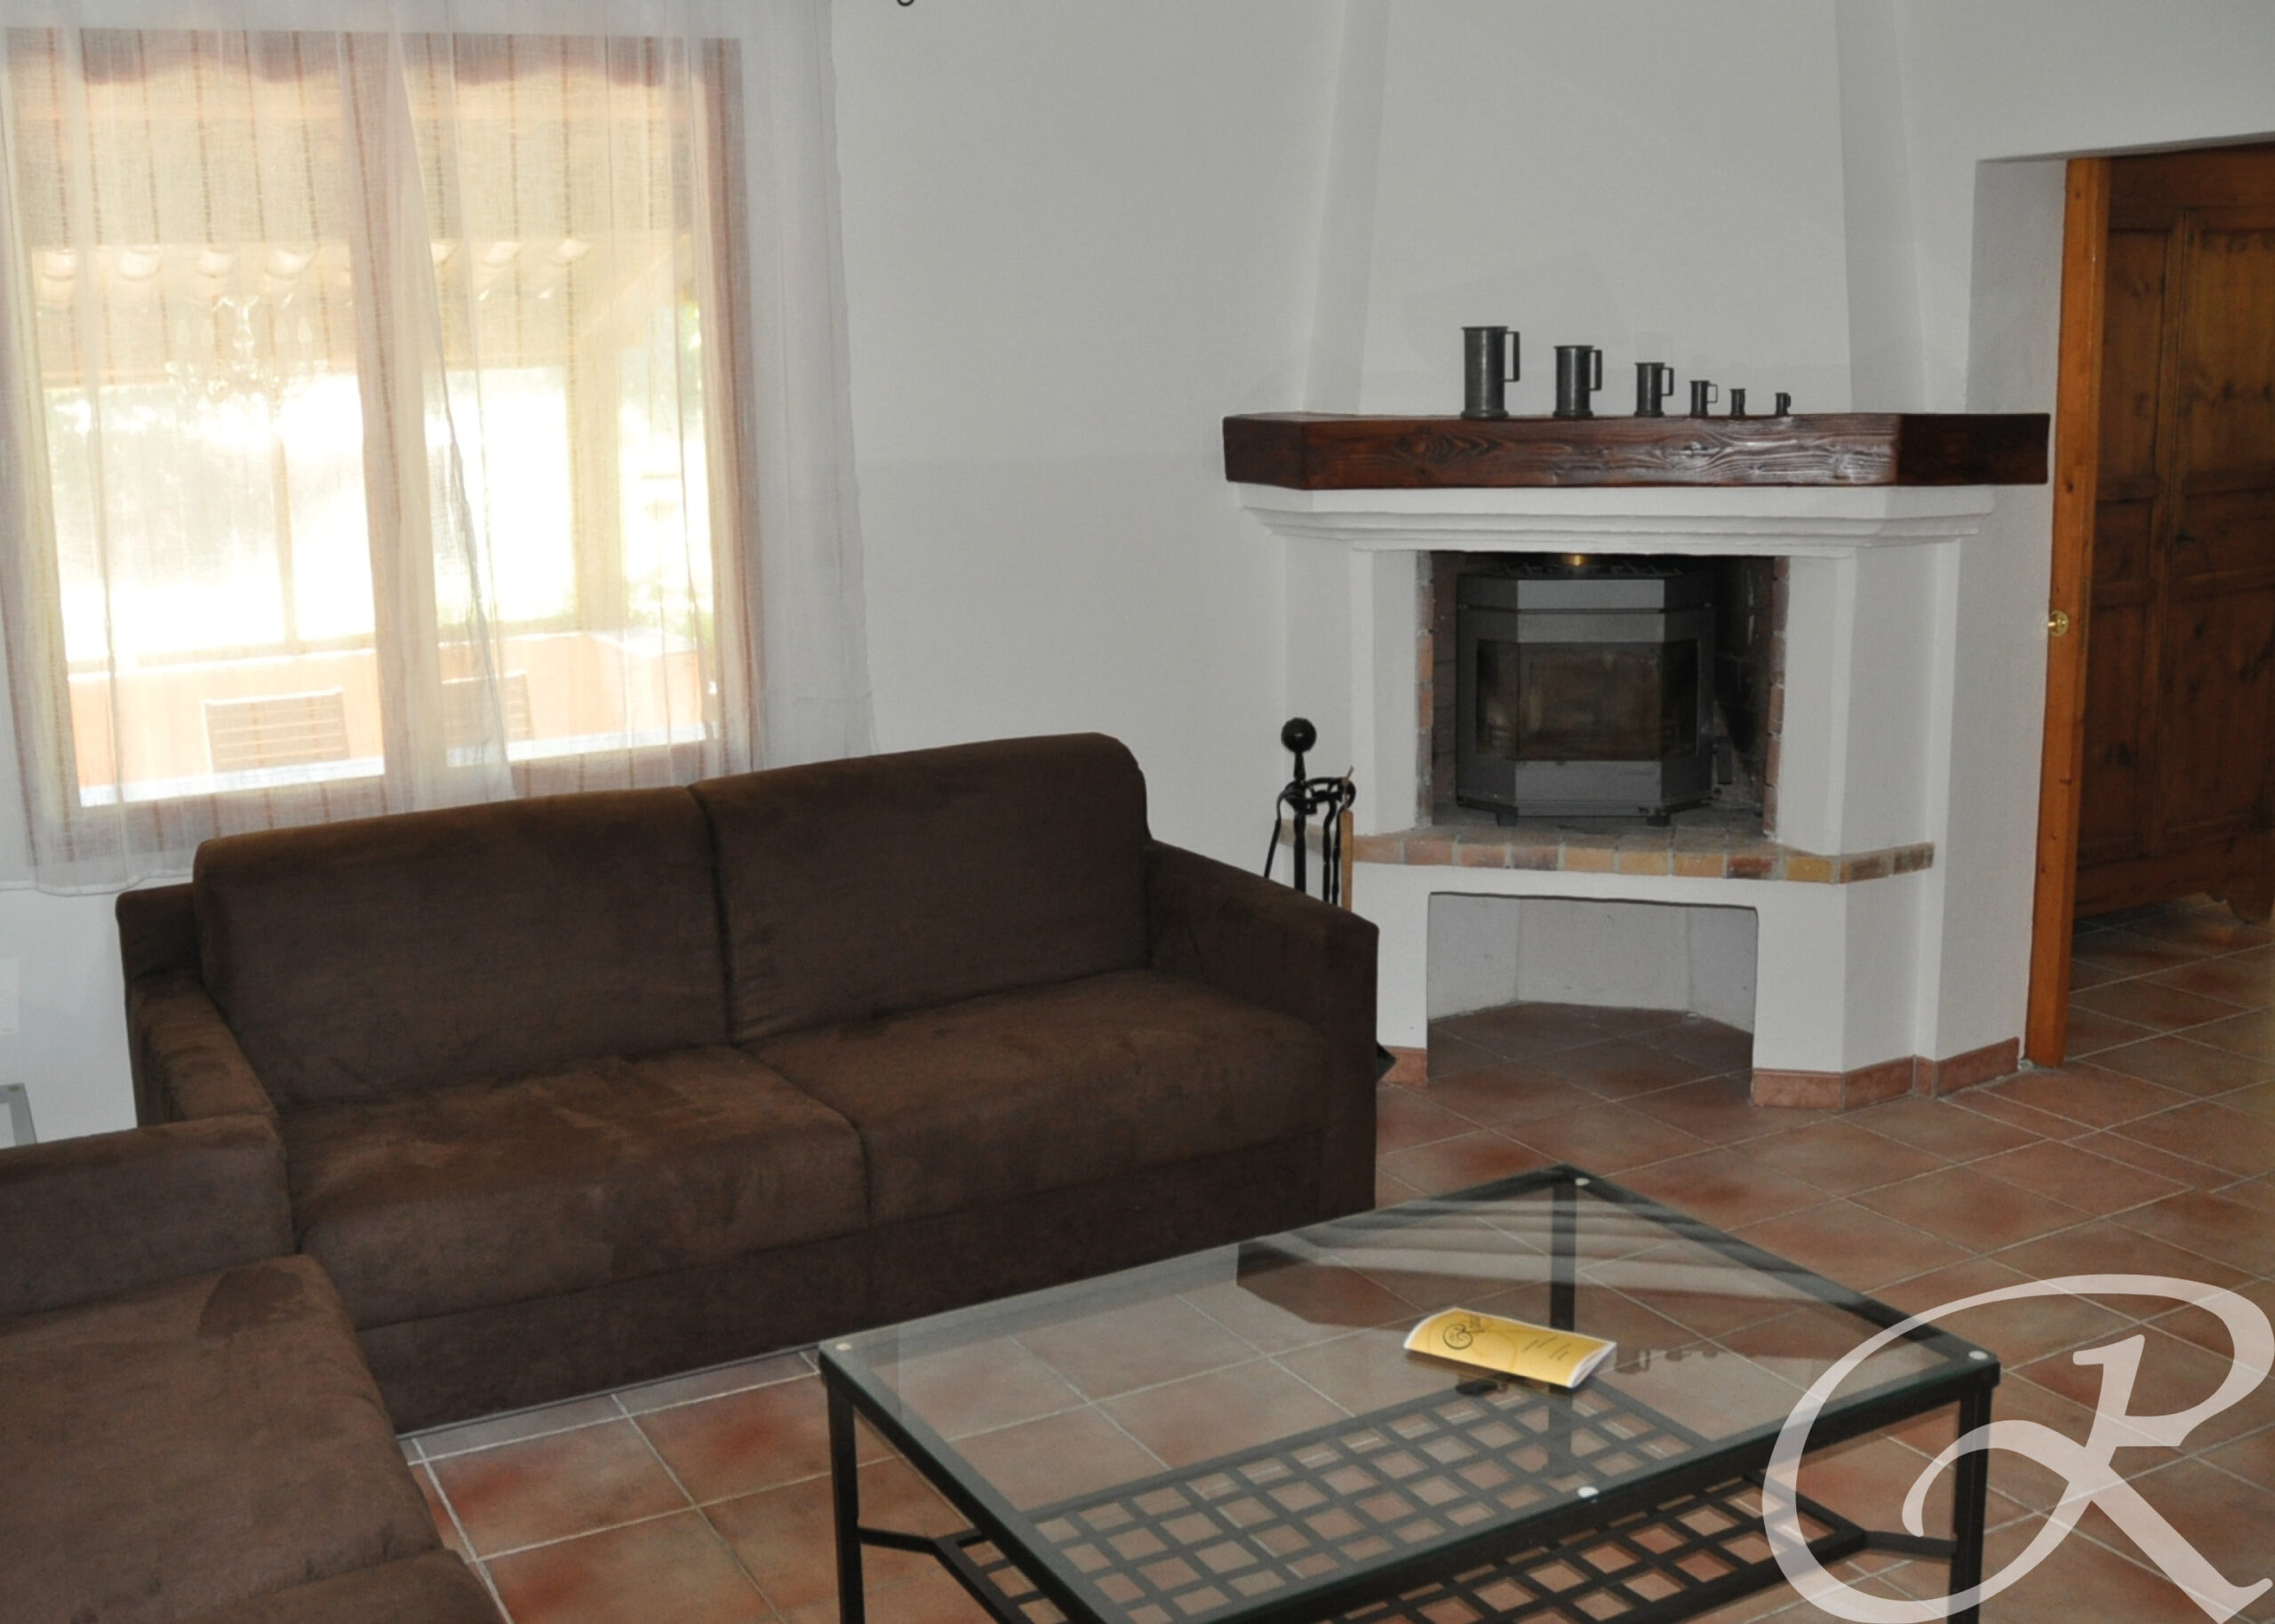 L’Appartement du Thym vous offrira 110 m² meublé avec cuisine équipée pouvant accueillir jusqu'à 6 personnes, situé à 30 minutes de Marseille.